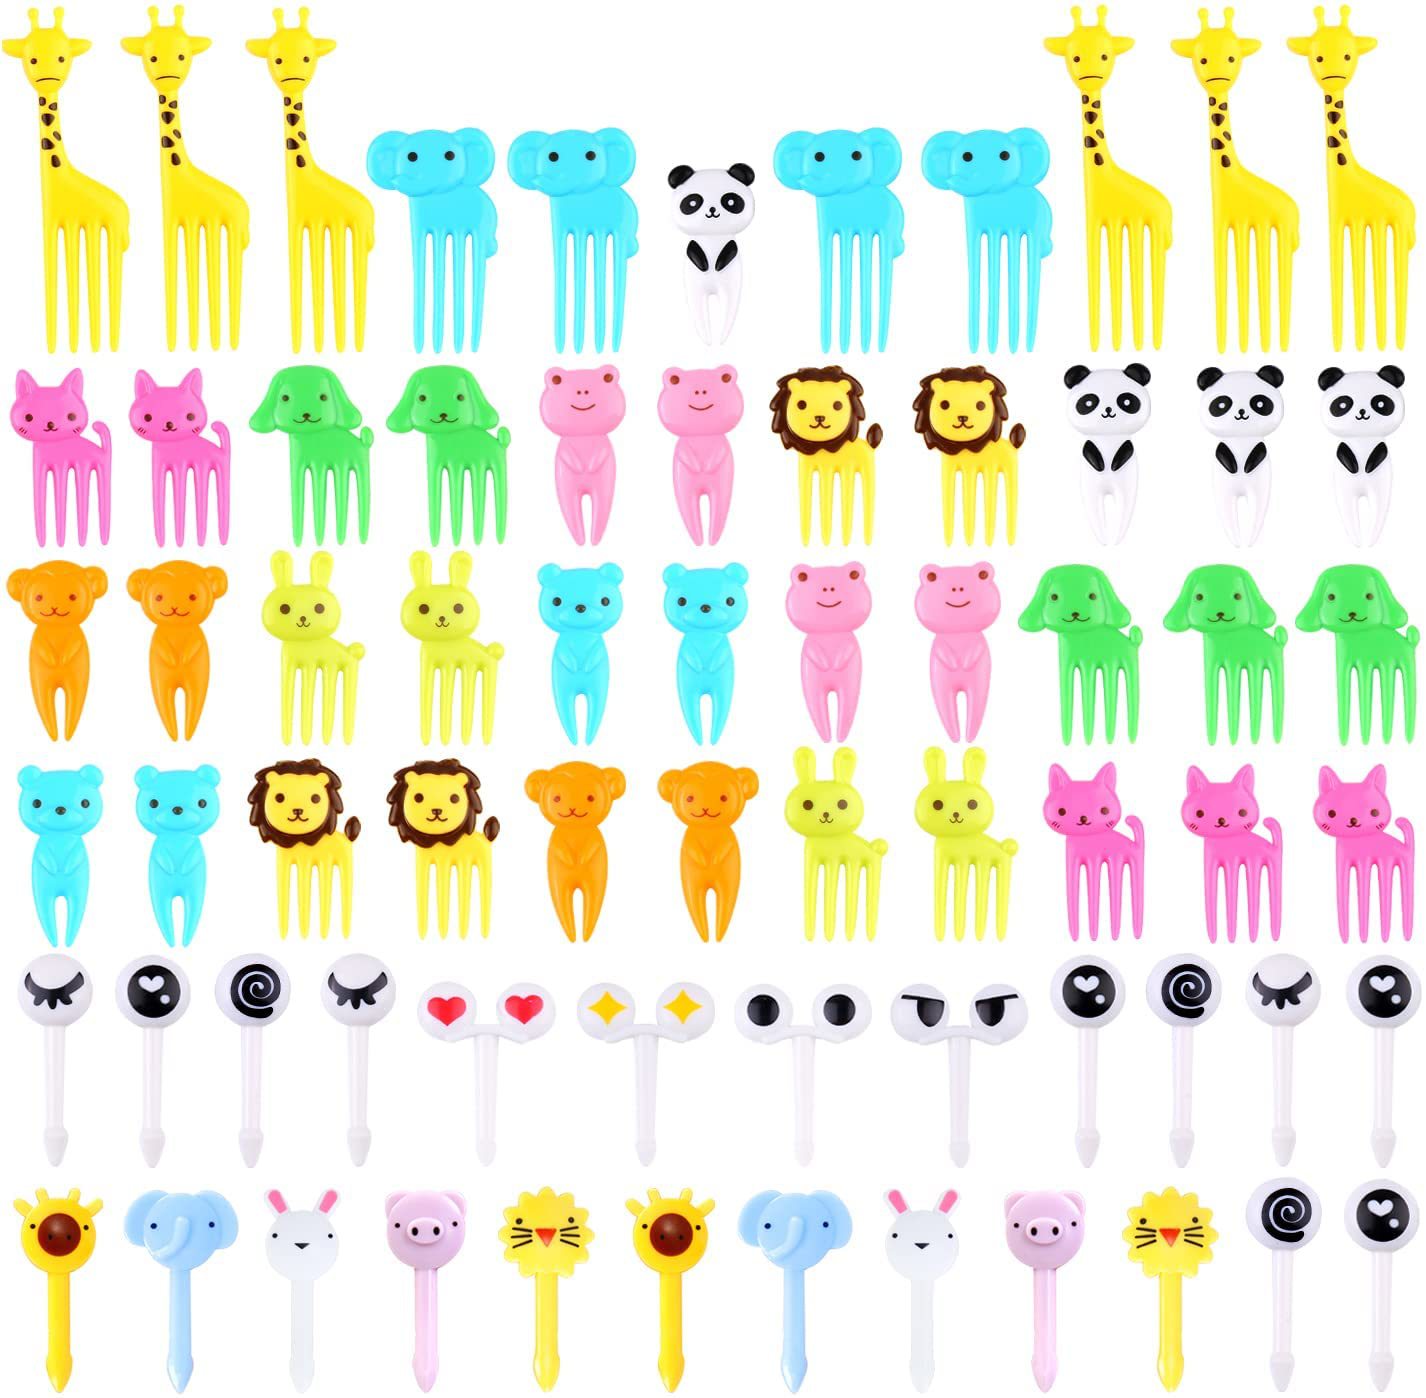 日本家用卡通水果叉创意儿童动物可爱塑料水果叉套装便当签